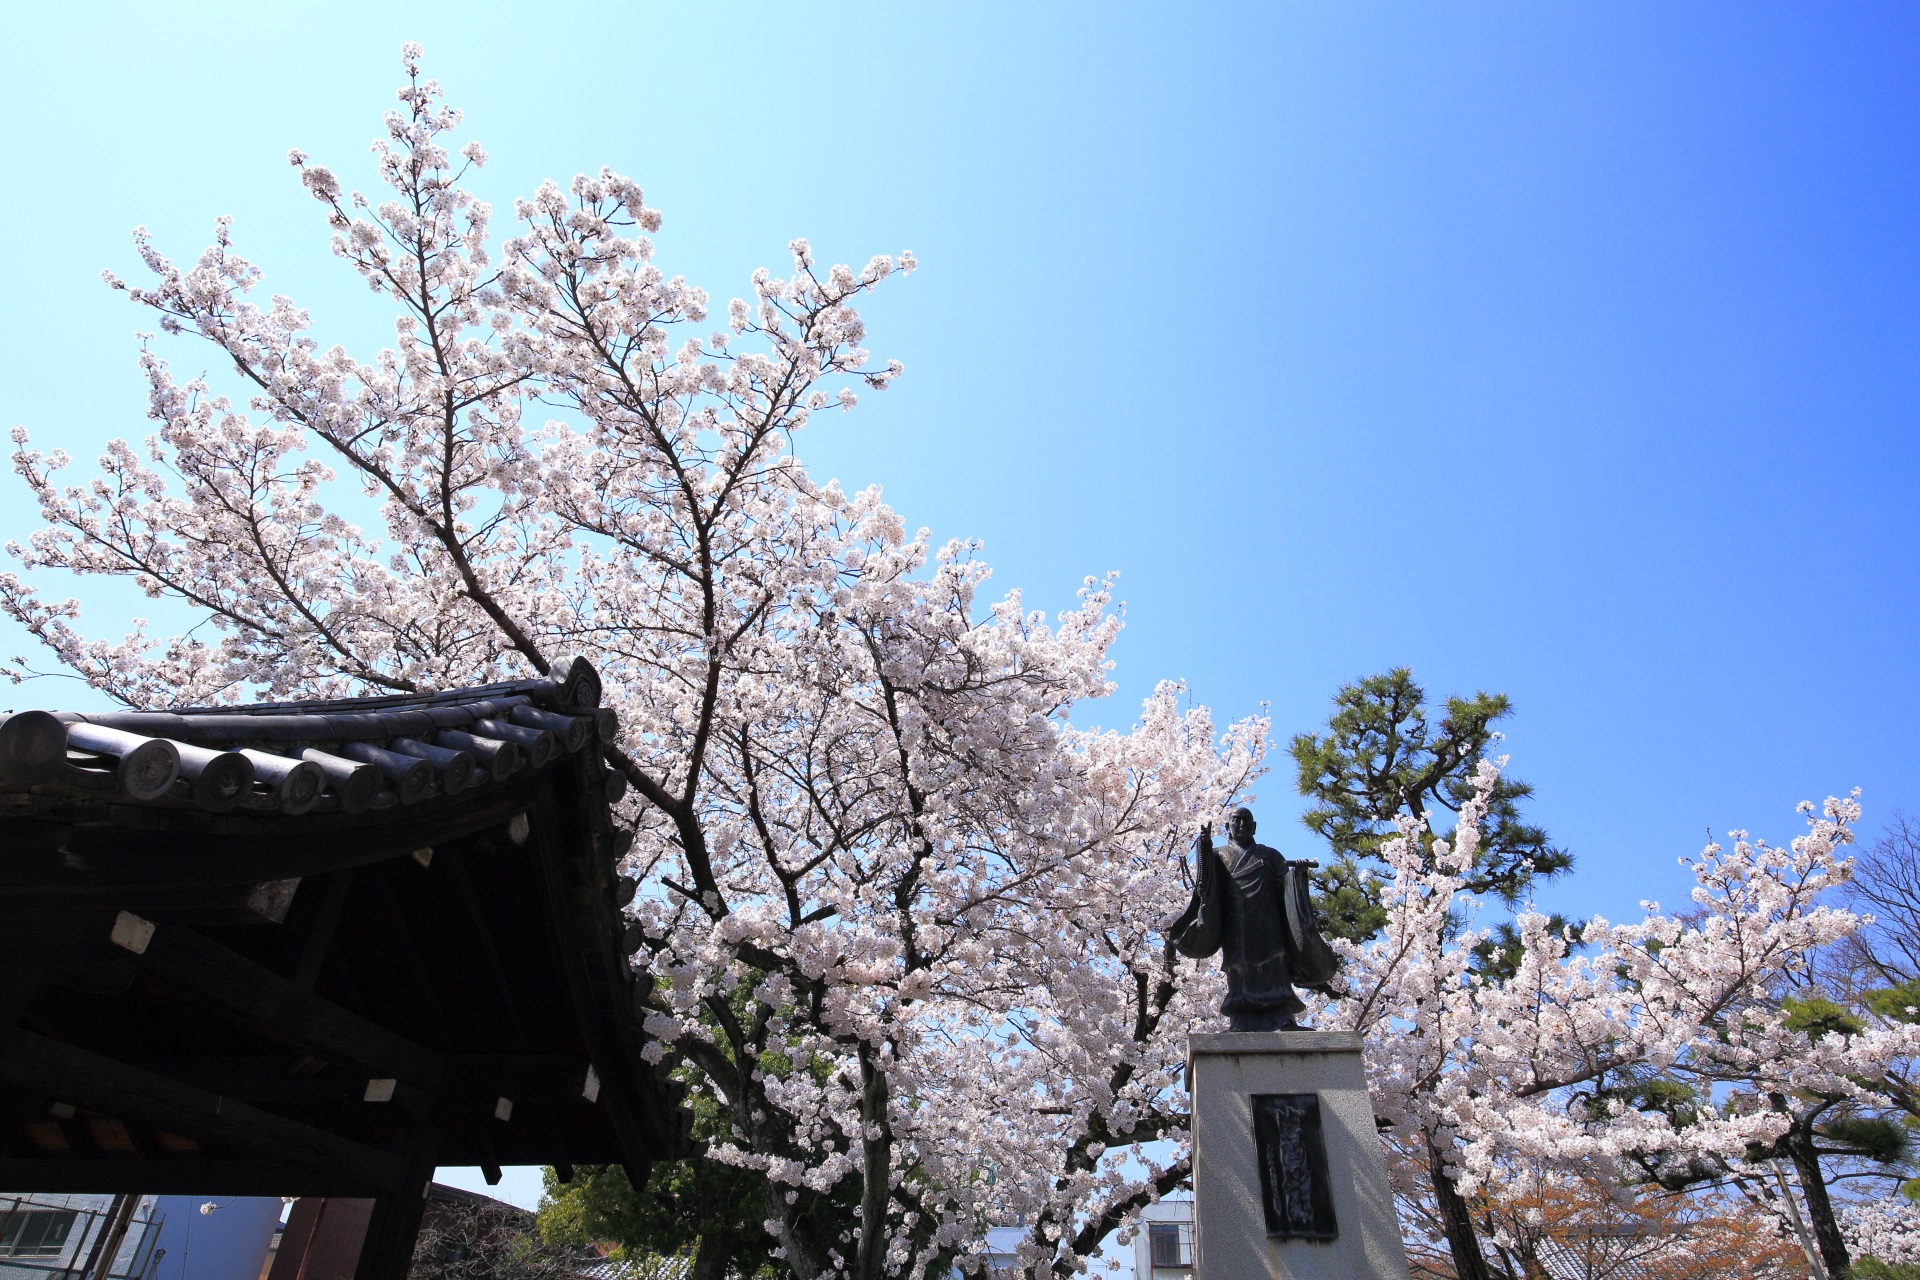 妙蓮寺の手水舎や日蓮上人像付近の優雅に華やぐ桜